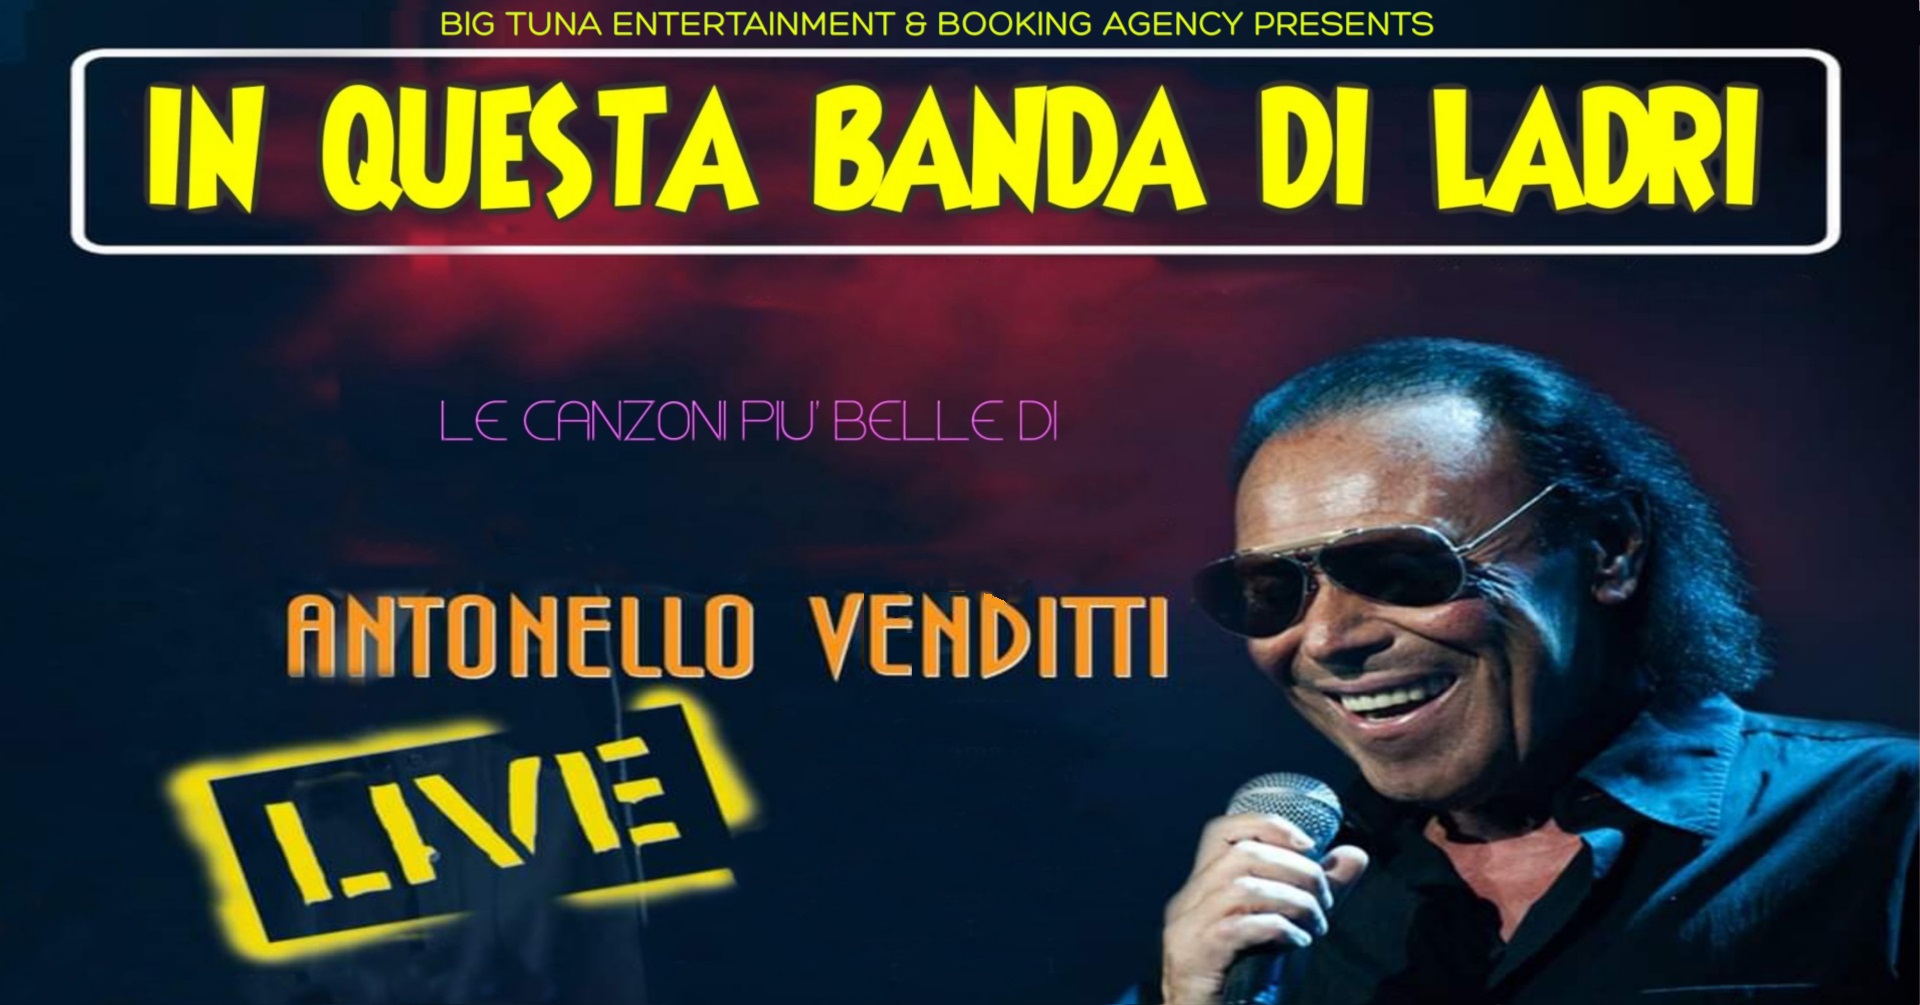 IN QUESTA BANDA DI LADRI - ANTONELLO VENDITTI TRIBUTE live@BAKI, SELVAZZANO DENTRO (PD) - EventiFVG.it